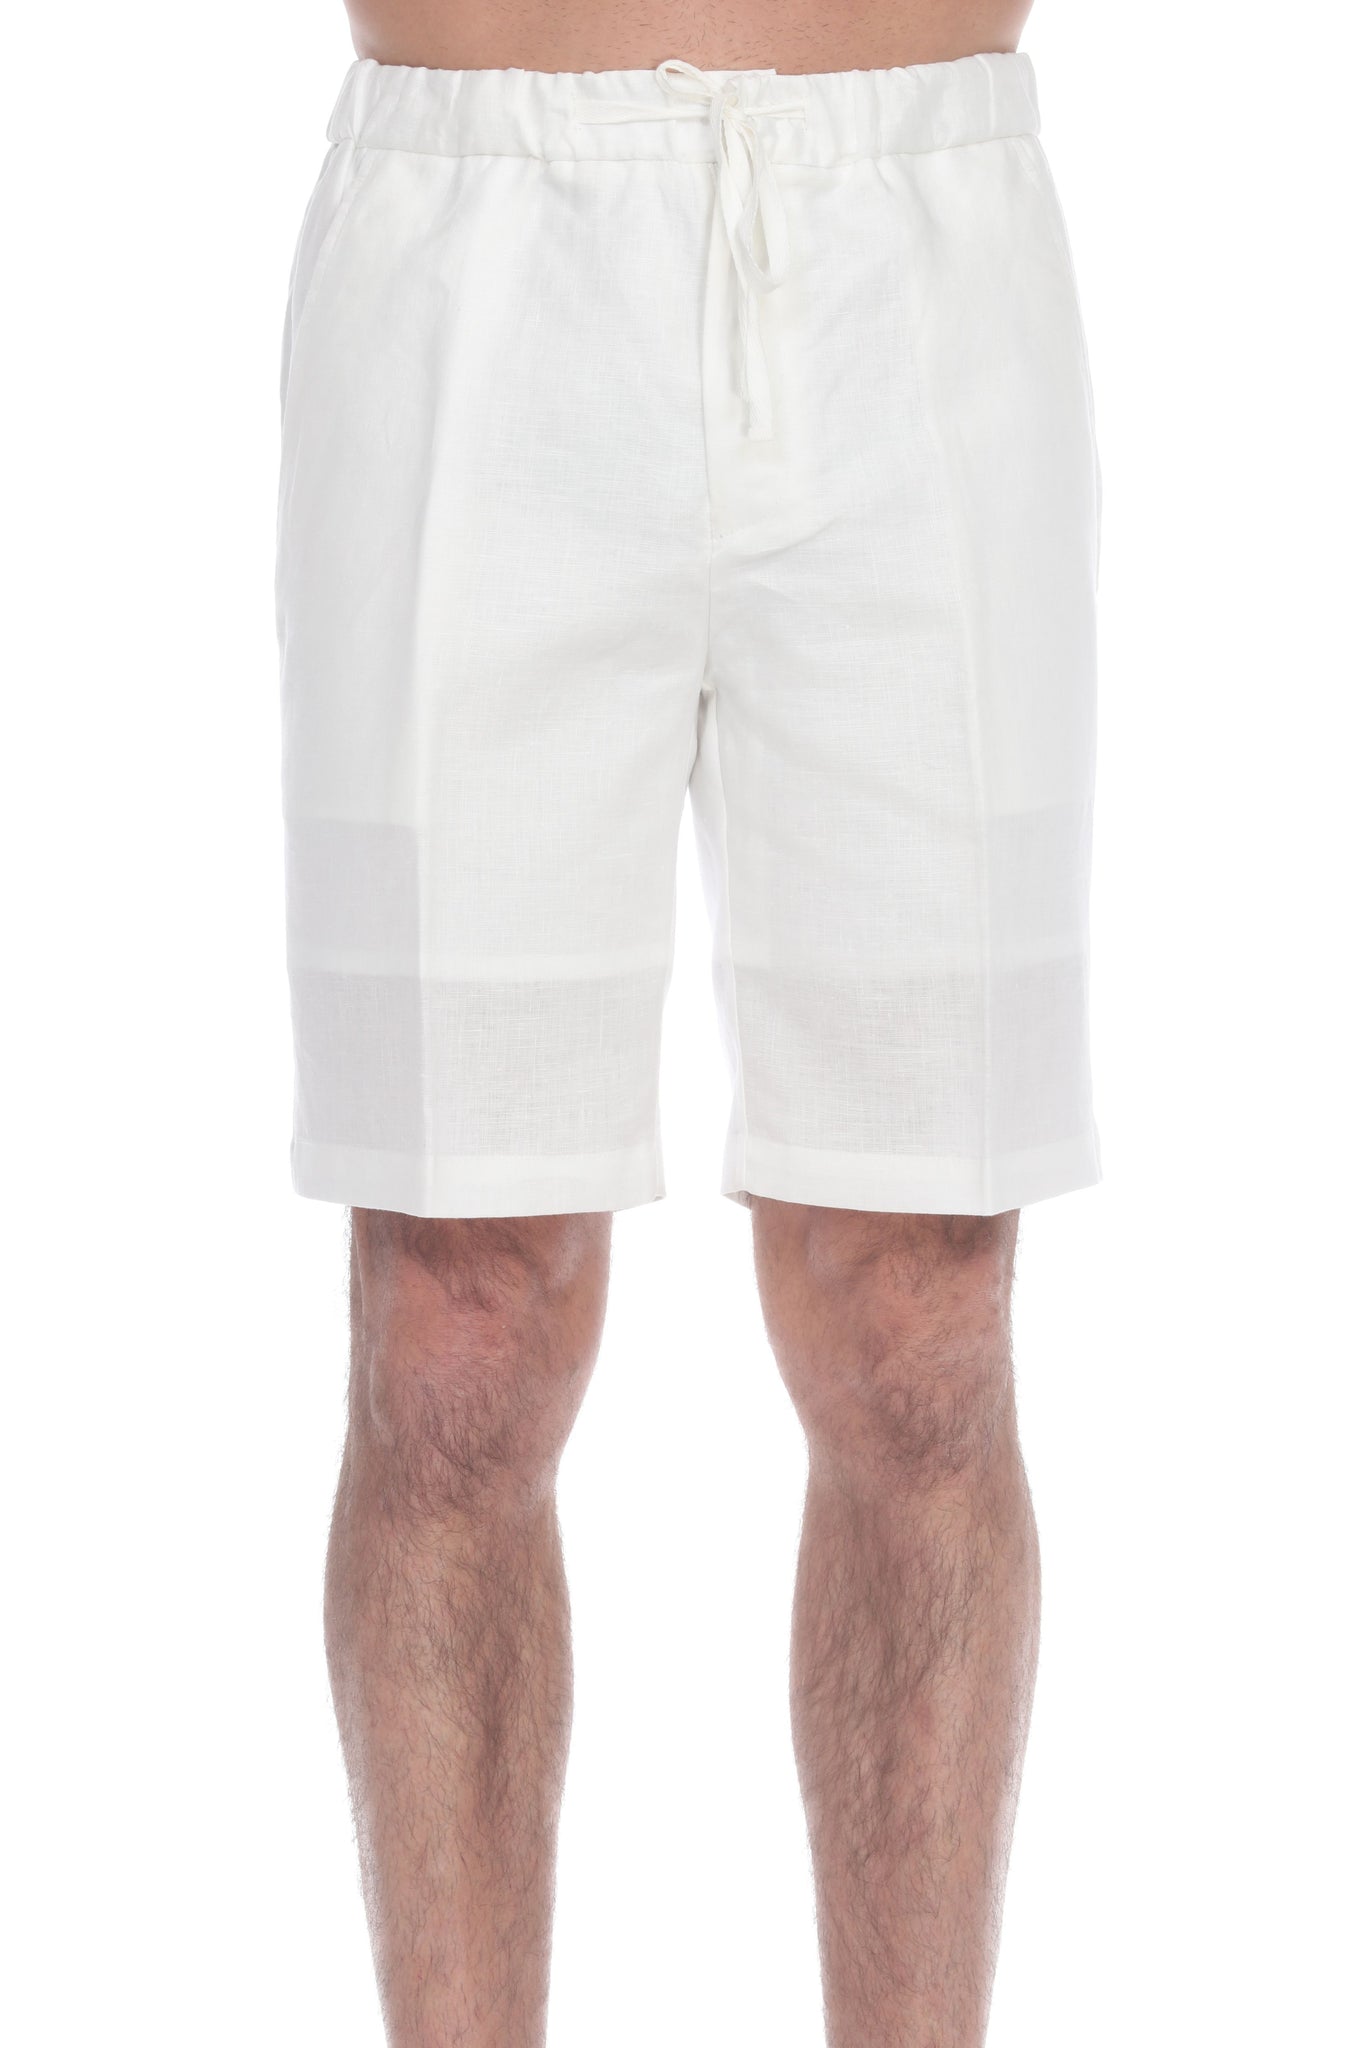 Natural LinenShorts, Resortwear Shorts